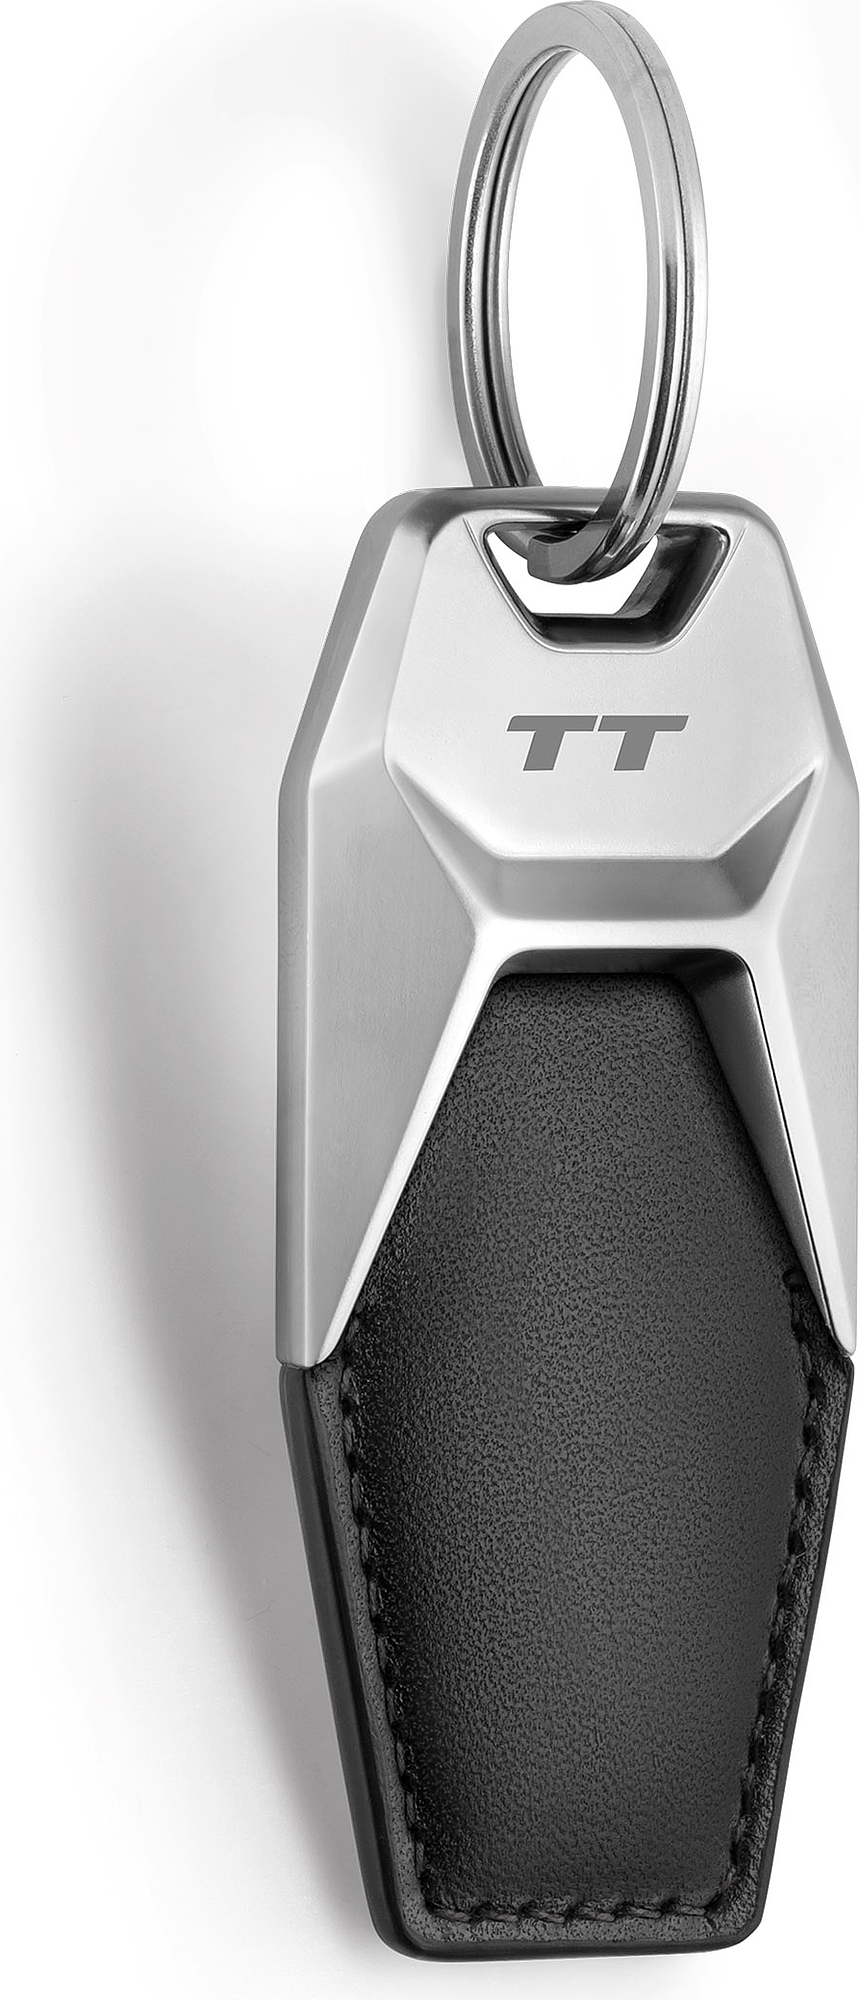 Porte-clés Audi TT (Version 2)